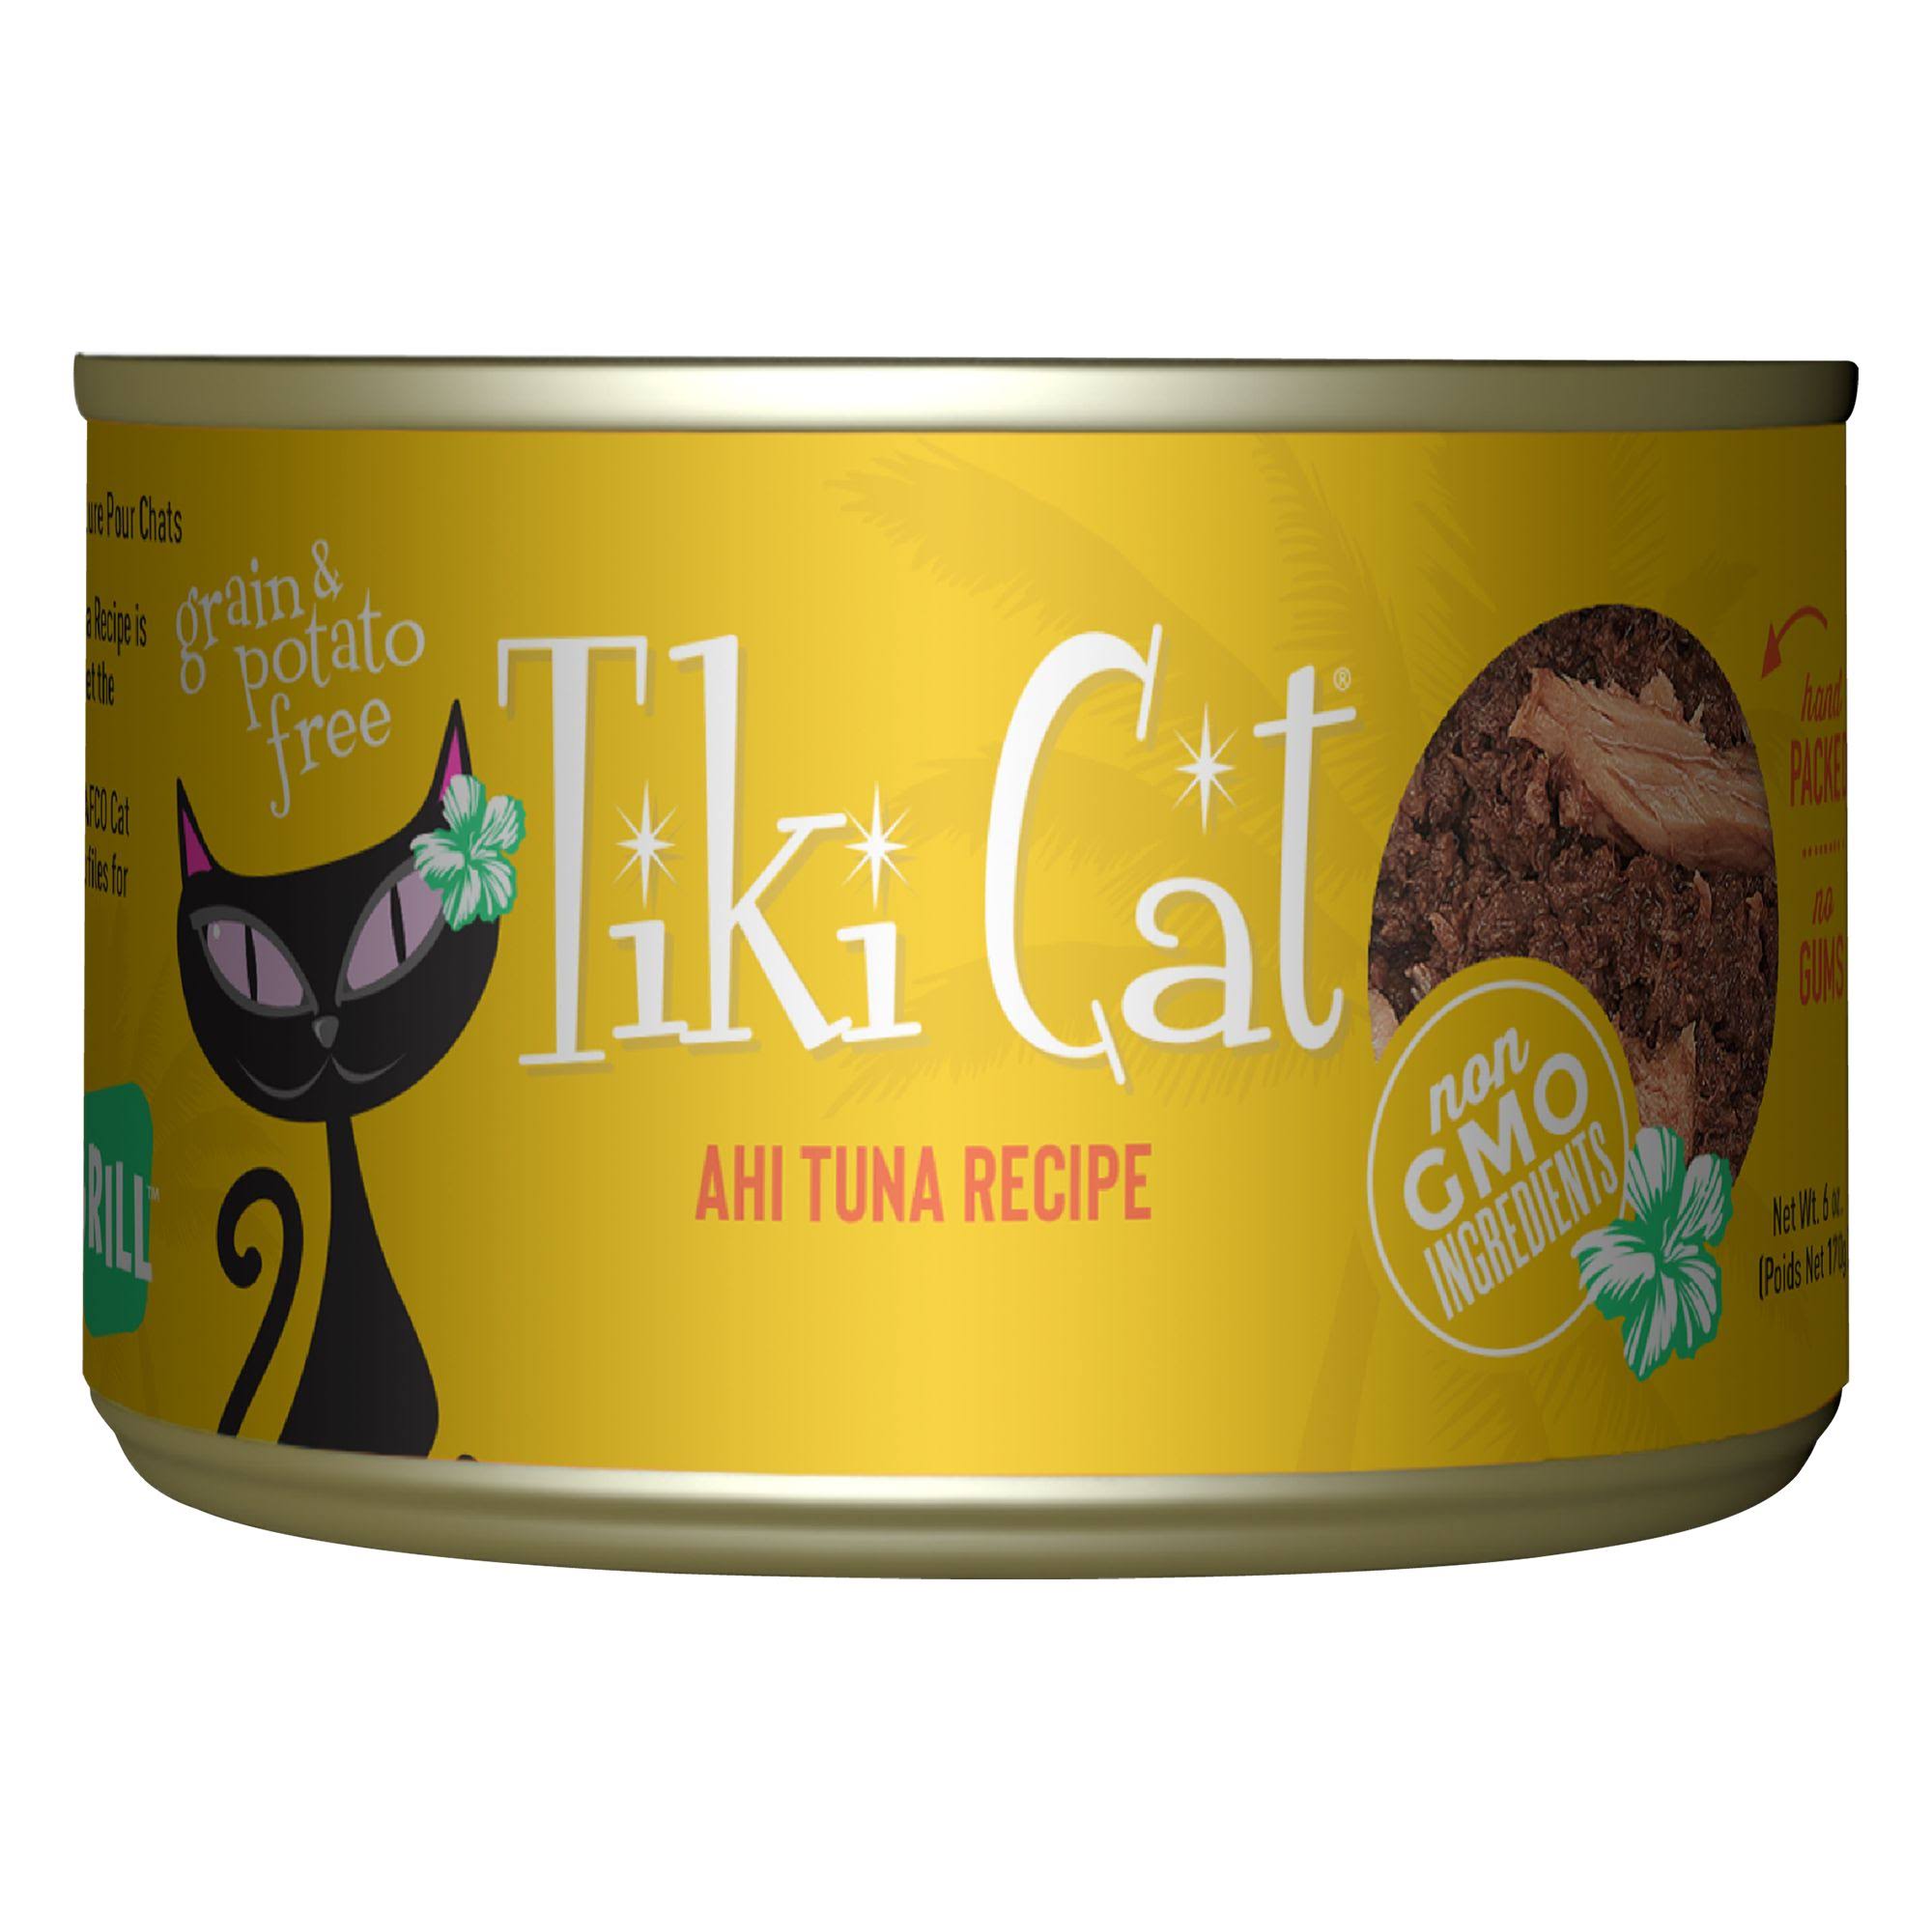 Tiki Cat Hawaiian Grill Ahi Tuna - 6oz